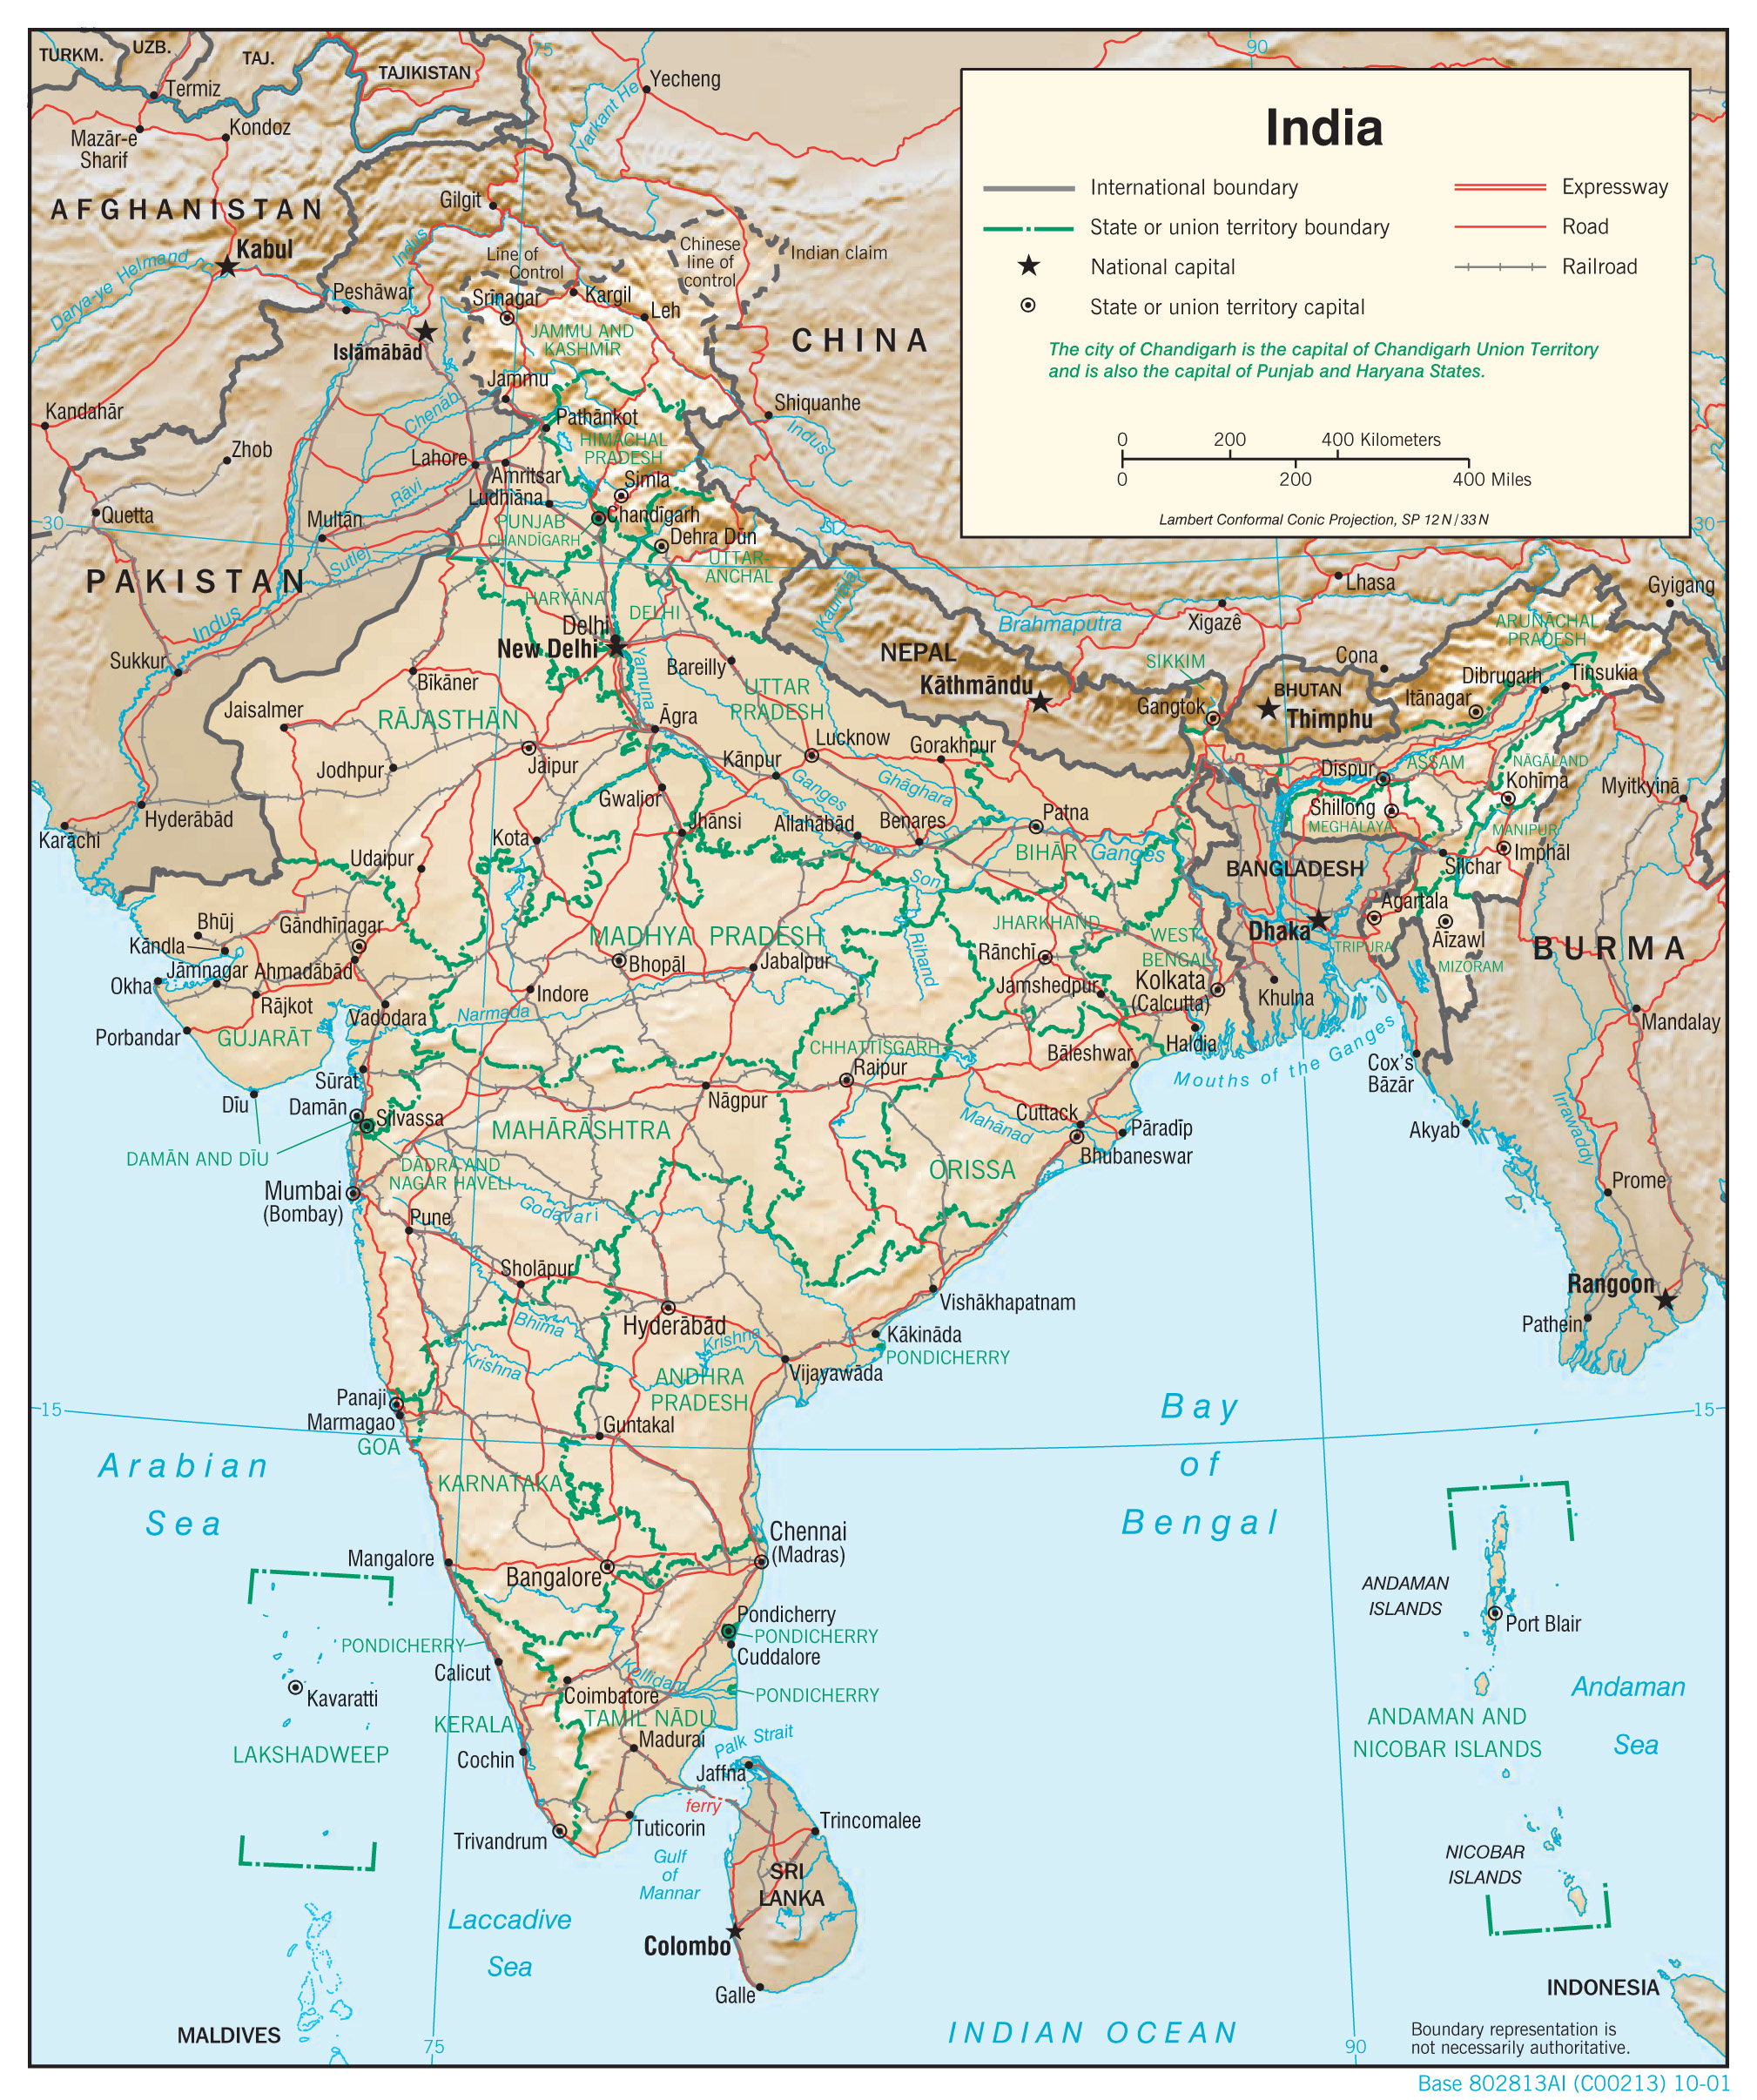 TẢI Bản đồ Ấn Độ (India Map) khổ lớn mới nhất 2024 - Tải bản đồ
Tải bản đồ Ấn Độ (India Map) khổ lớn mới nhất 2024 để định vị và khám phá những điểm đến và địa danh đẹp của Ấn Độ. Bản đồ được cập nhật chính xác và chi tiết với nhiều tính năng hỗ trợ cho chuyến đi của bạn.